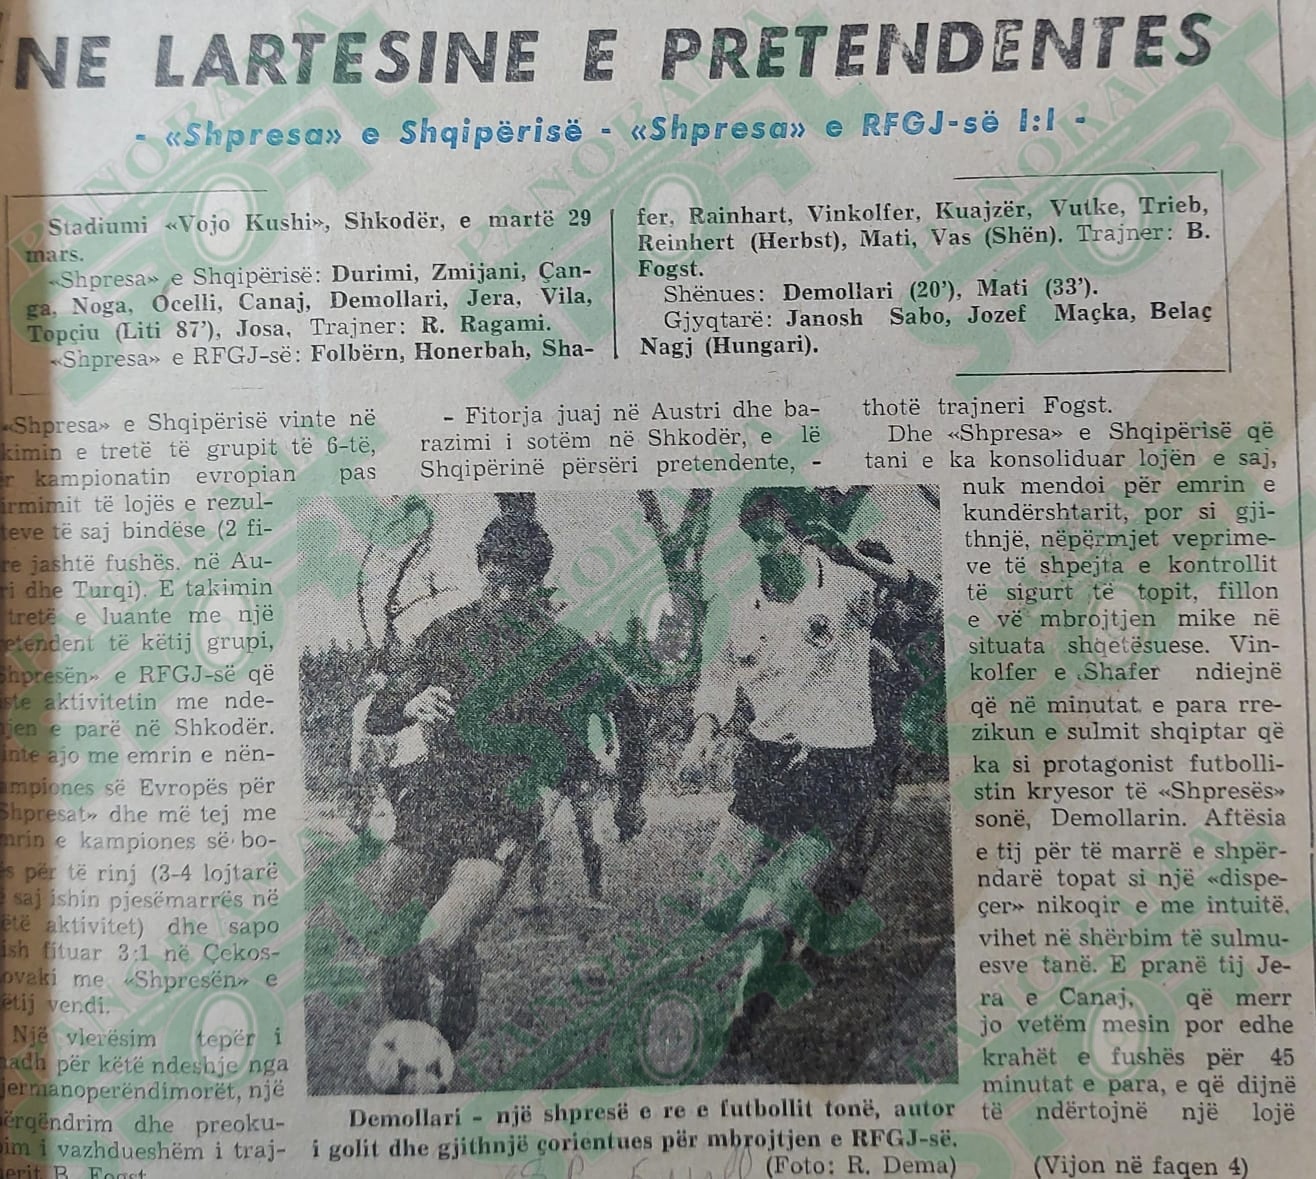 Shqipëria - RFGJ 1-1. Botim anastatik nga faqja e parë e “Sportit Popullor”, 5 prill 1983. Kreu i fillimit të shkrimit të autorit Namik Mehmeti.